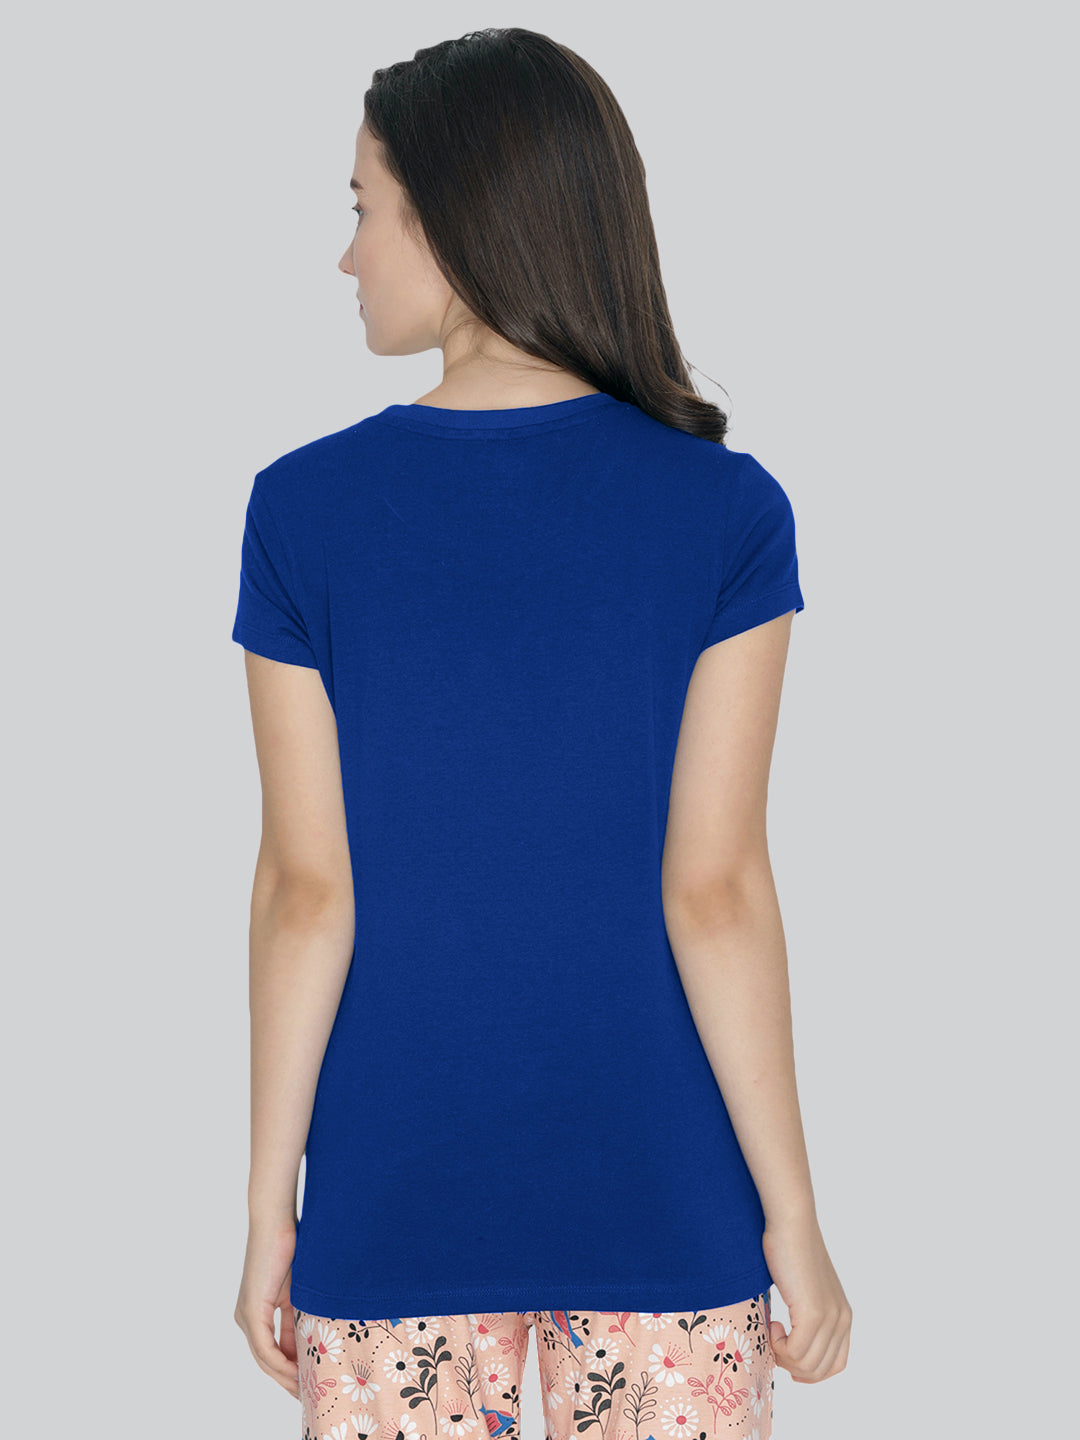 Blue Round Neck T-Shirt #401